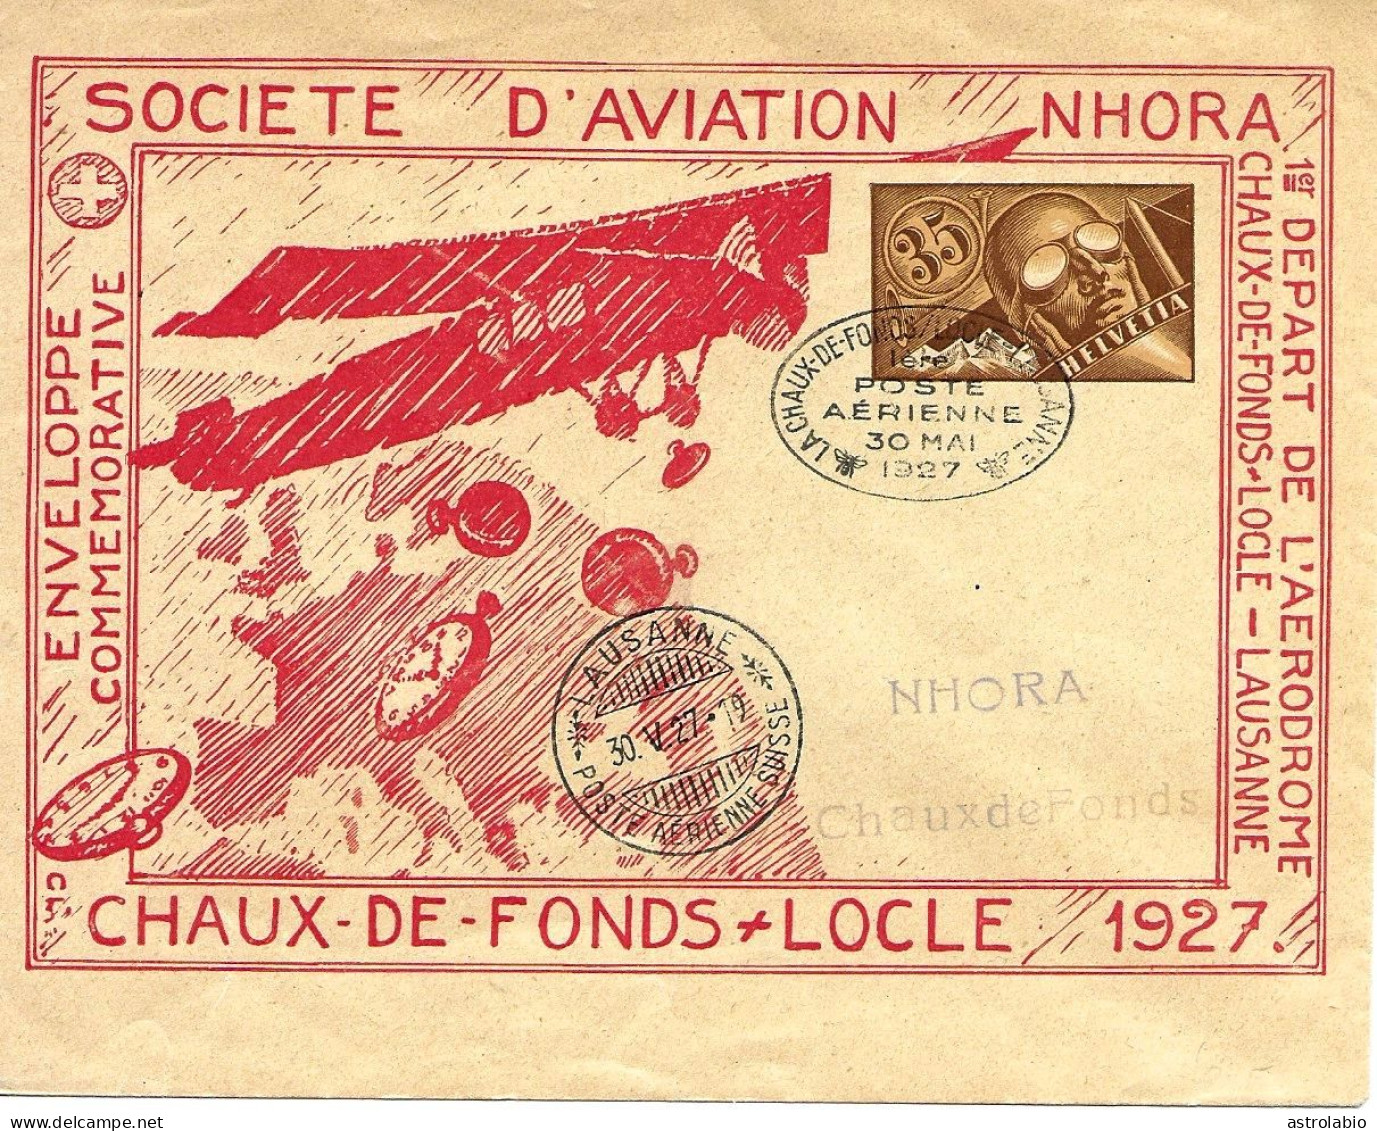 Navigation Horlogère Aérienne NHORA Suisse 1927, Entier Postal-enveloppe, Carte Voyagée - Clocks